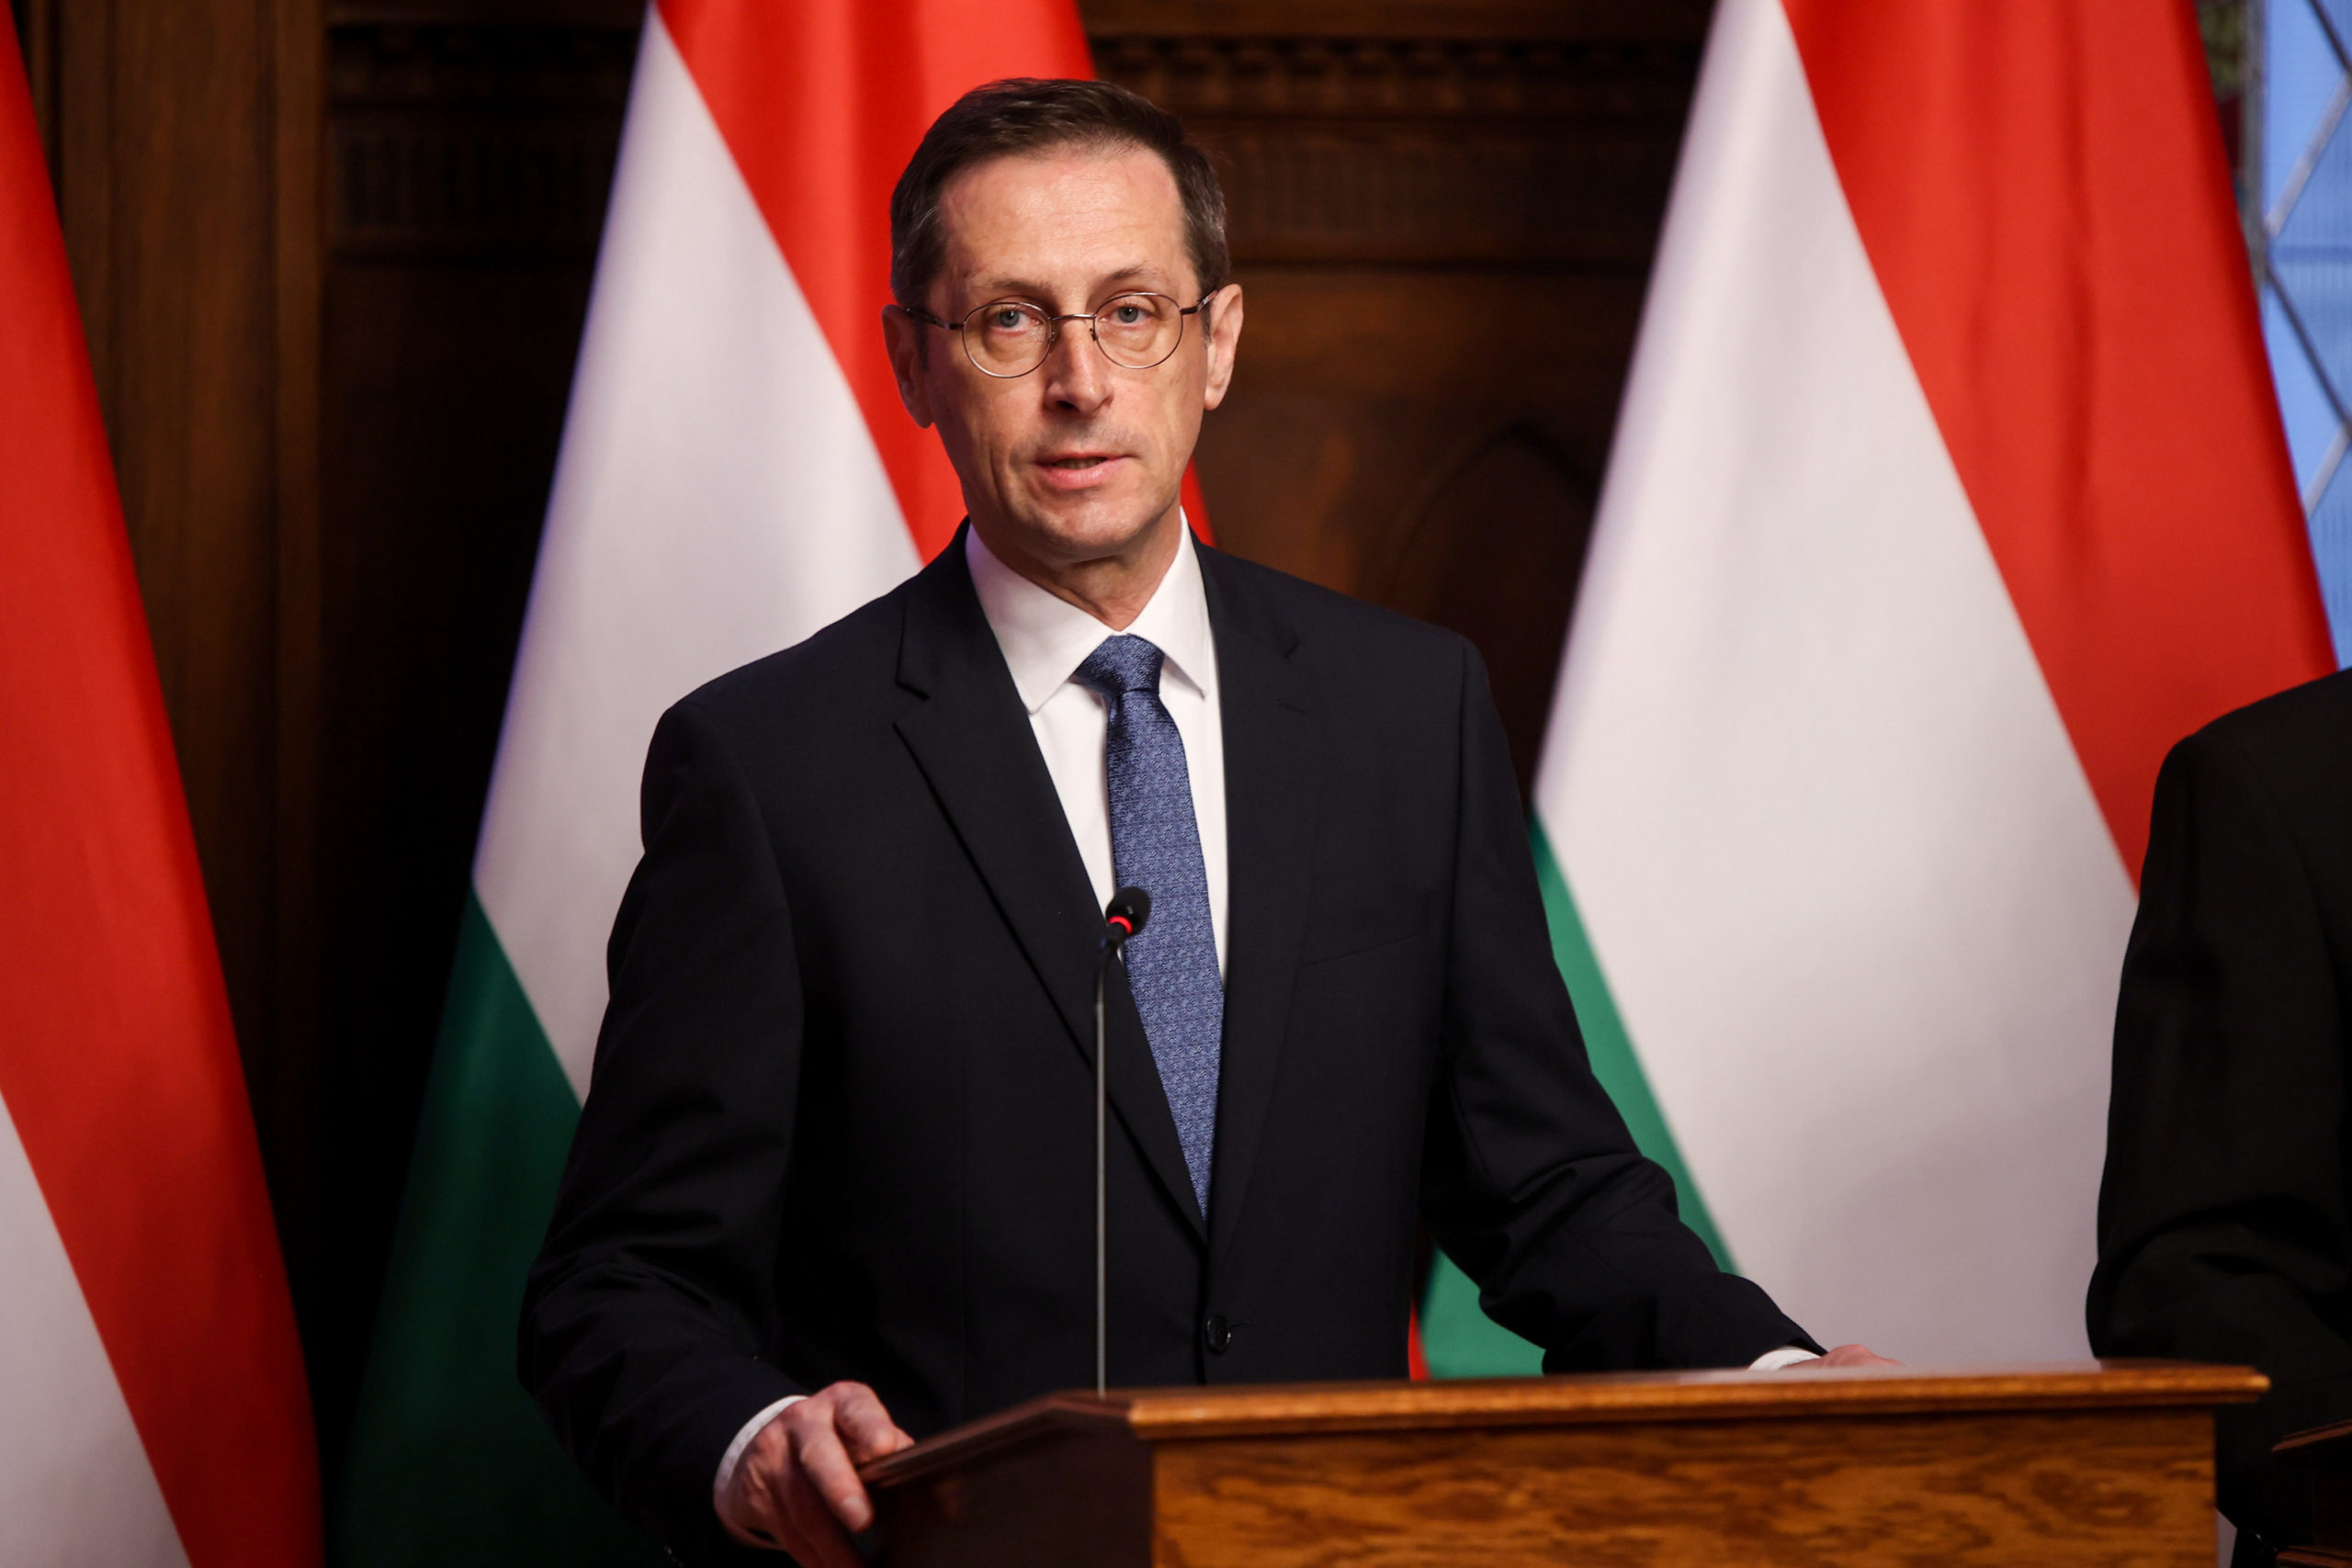 Varga Mihály: A magyar kormány kitart a nemzeti függetlenség mellett